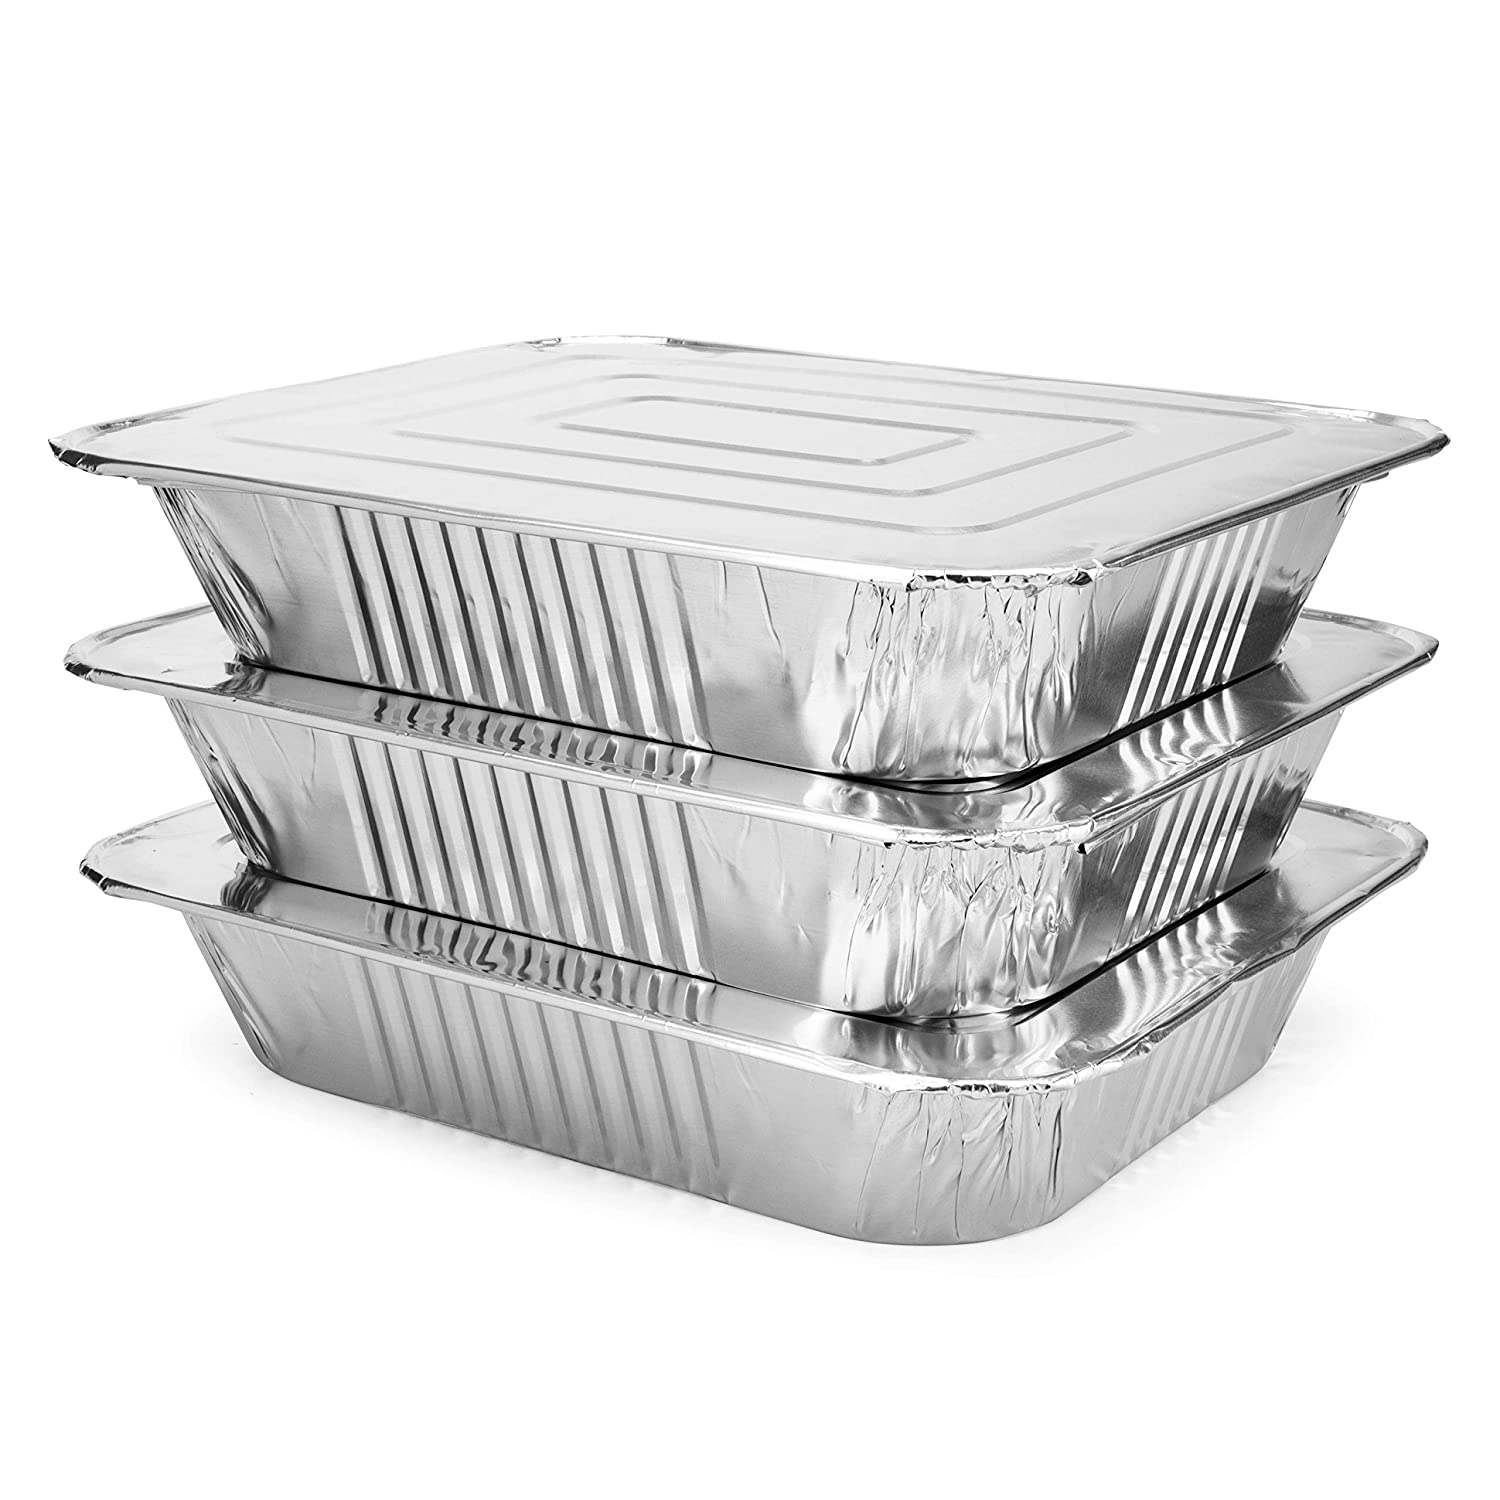 katbite 9x13 Aluminum Pans With Lids, 25 Packs Disposable Baking